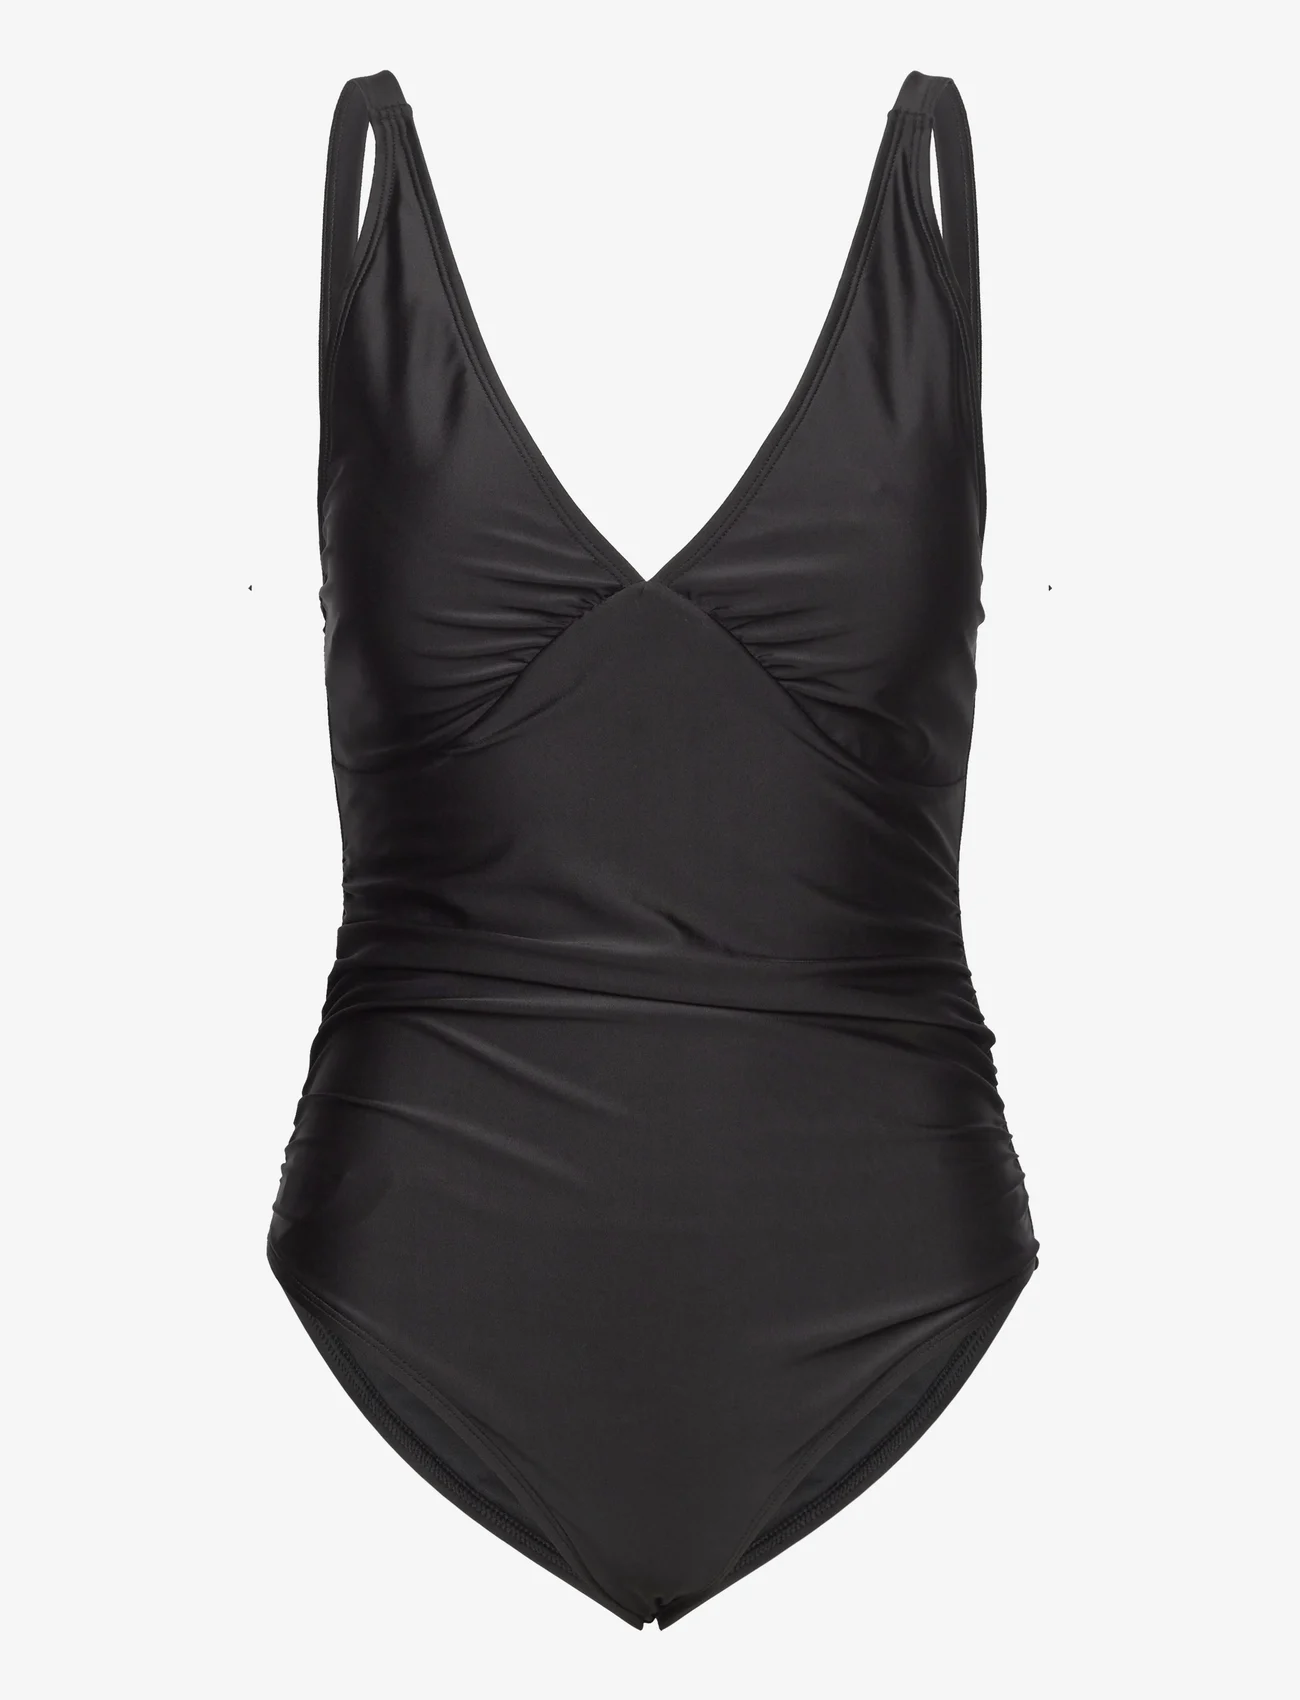 Rosemunde - Swimsuit - swimsuits - black - 0